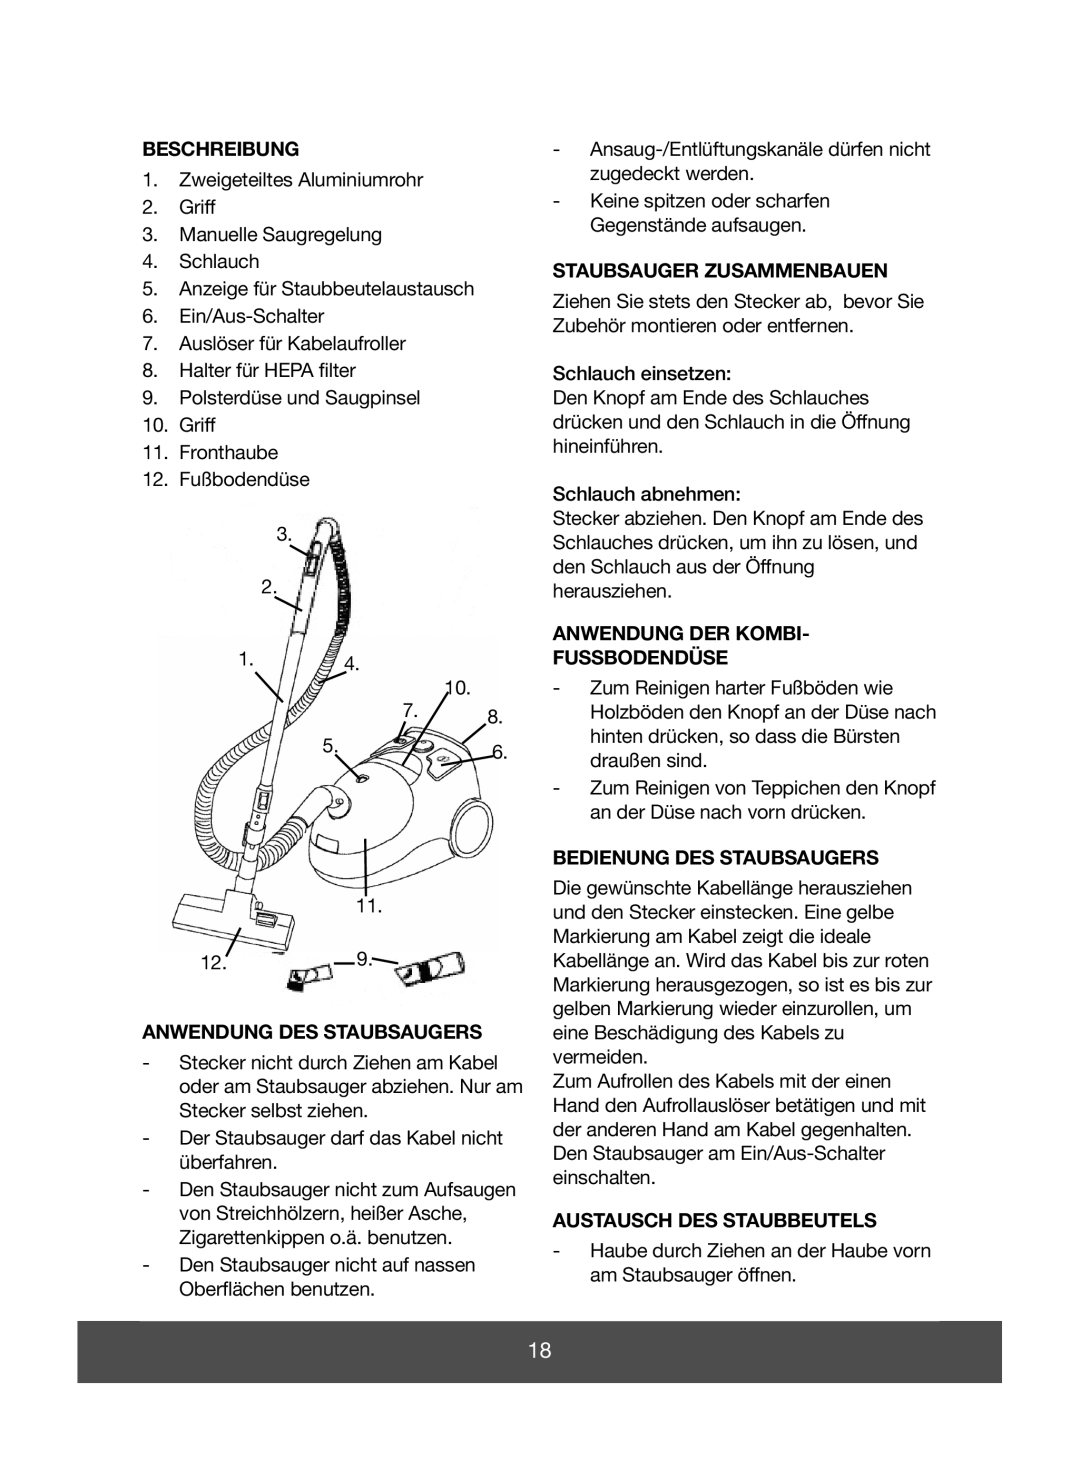 Melissa 640-049 Beschreibung, Anwendung Des Staubsaugers, Staubsauger Zusammenbauen, Anwendung Der Kombi Fussbodendüse 